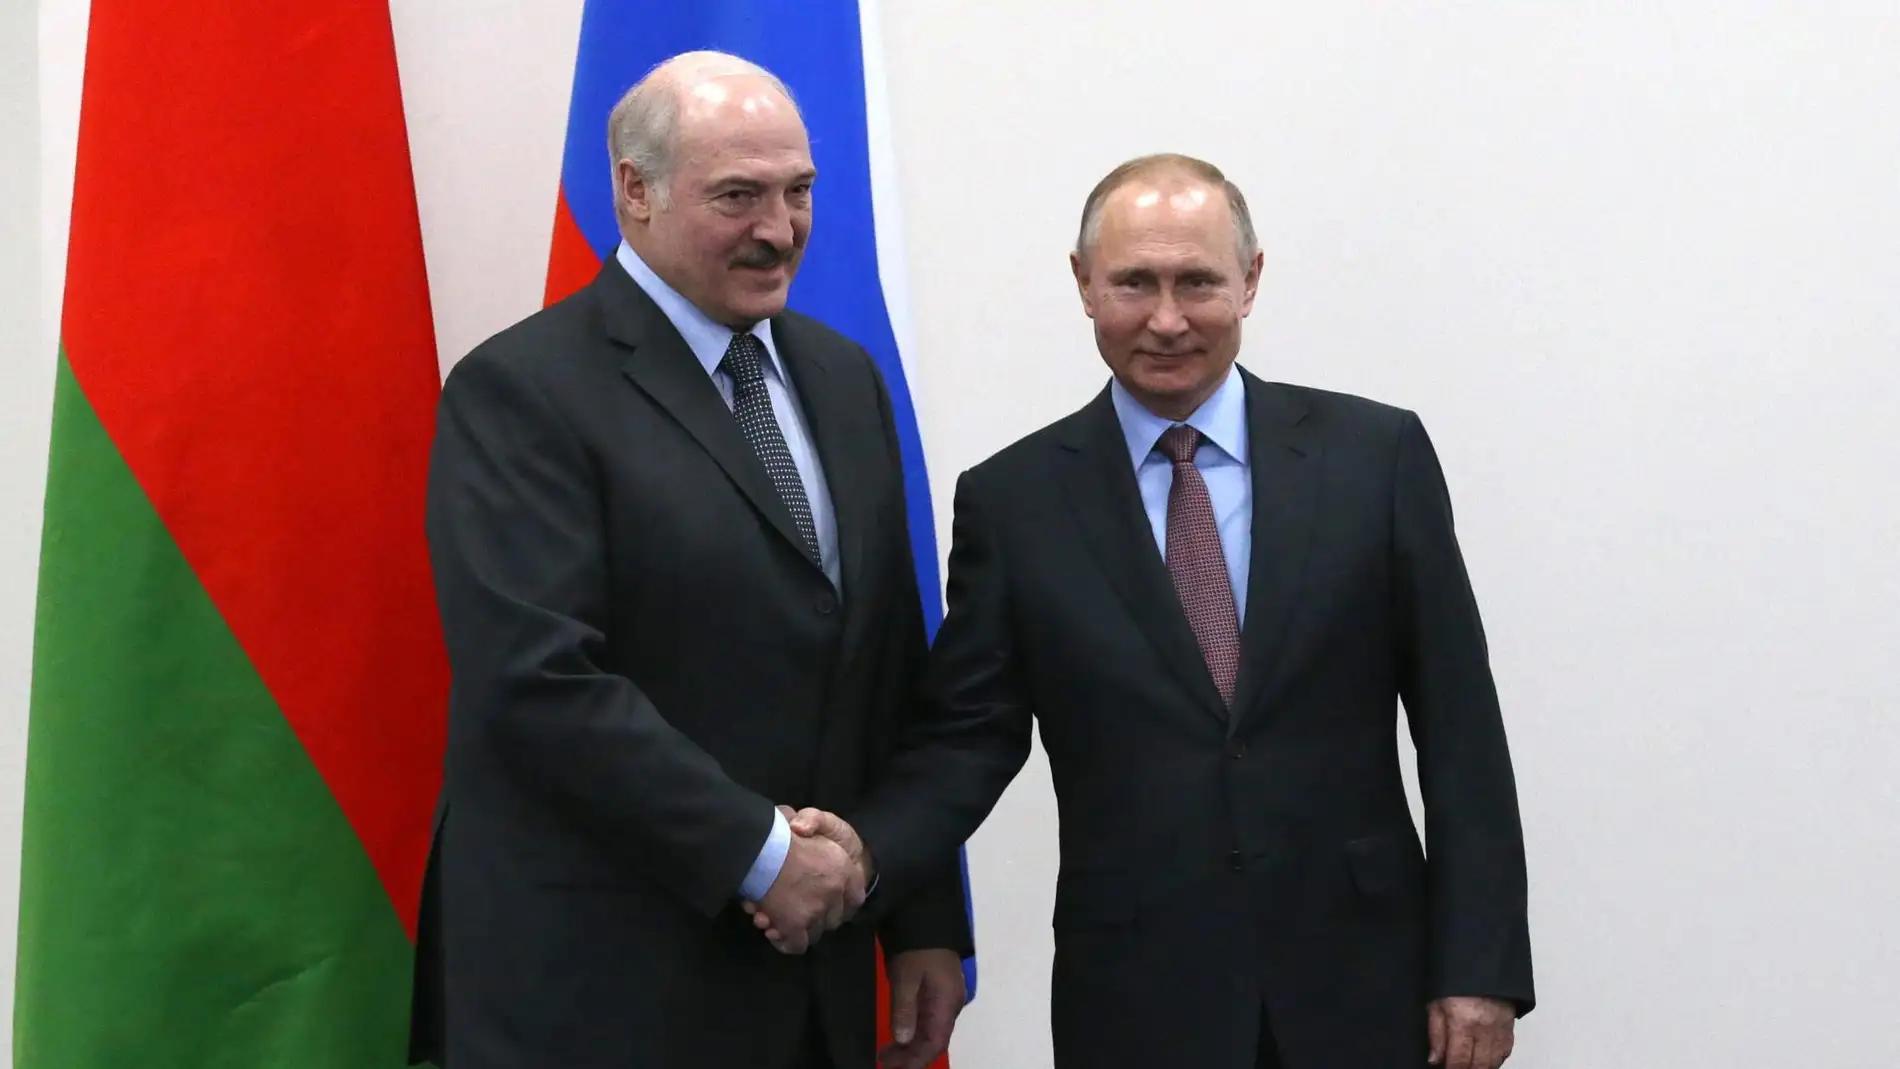 Lukashenko y Putin en una foto de archivo 